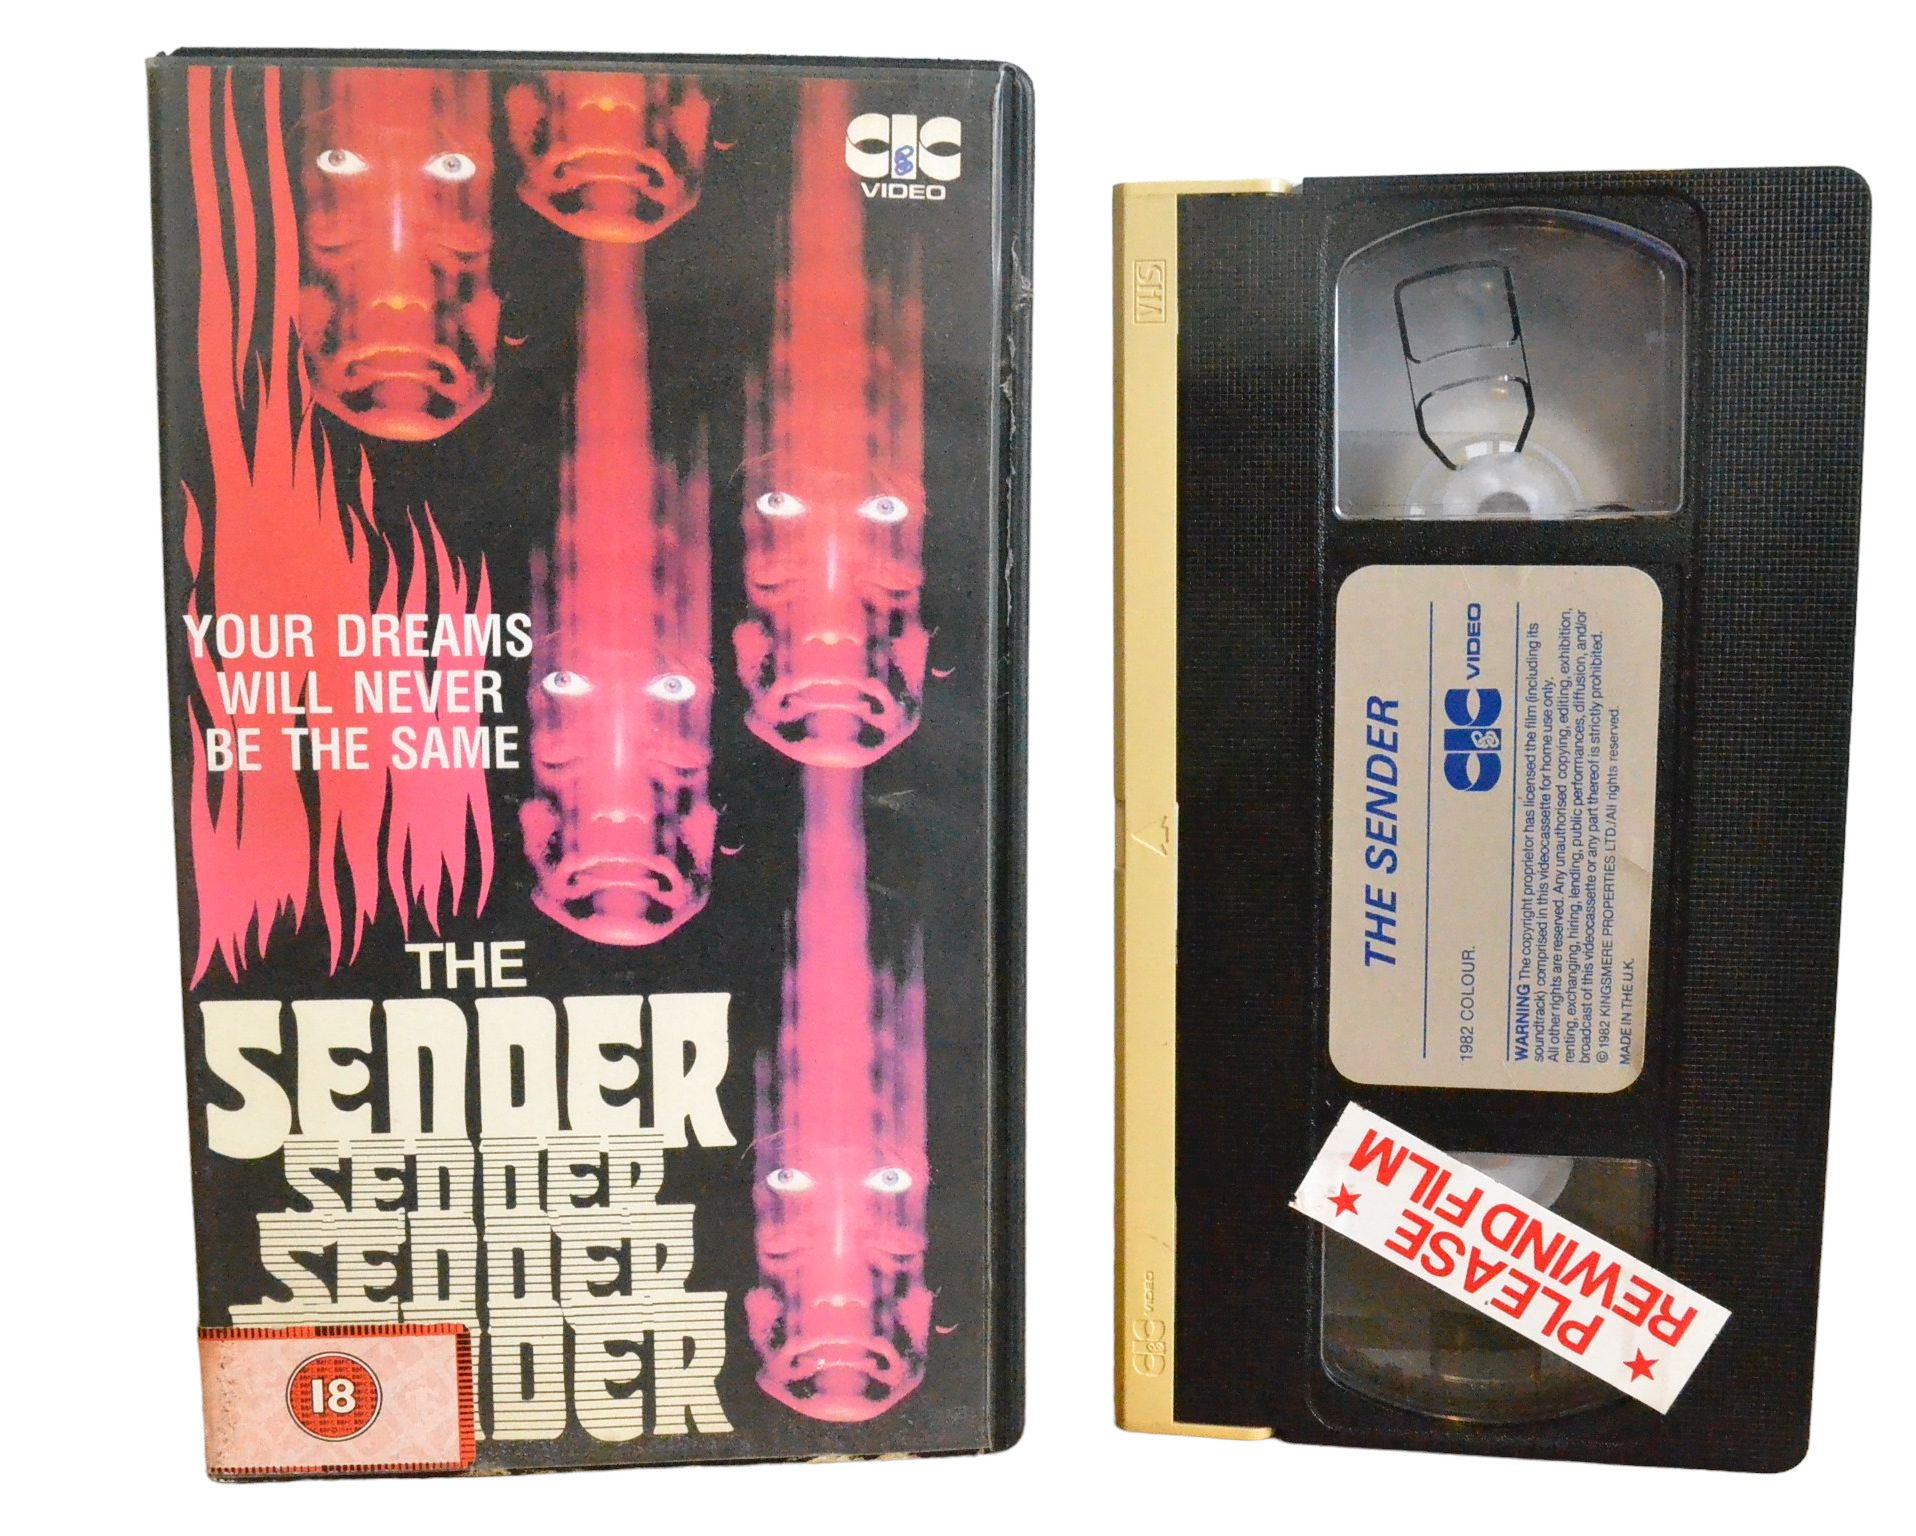 The Sender - Kathryn Harrold - CIC Video - Precert - Pal - VHS-